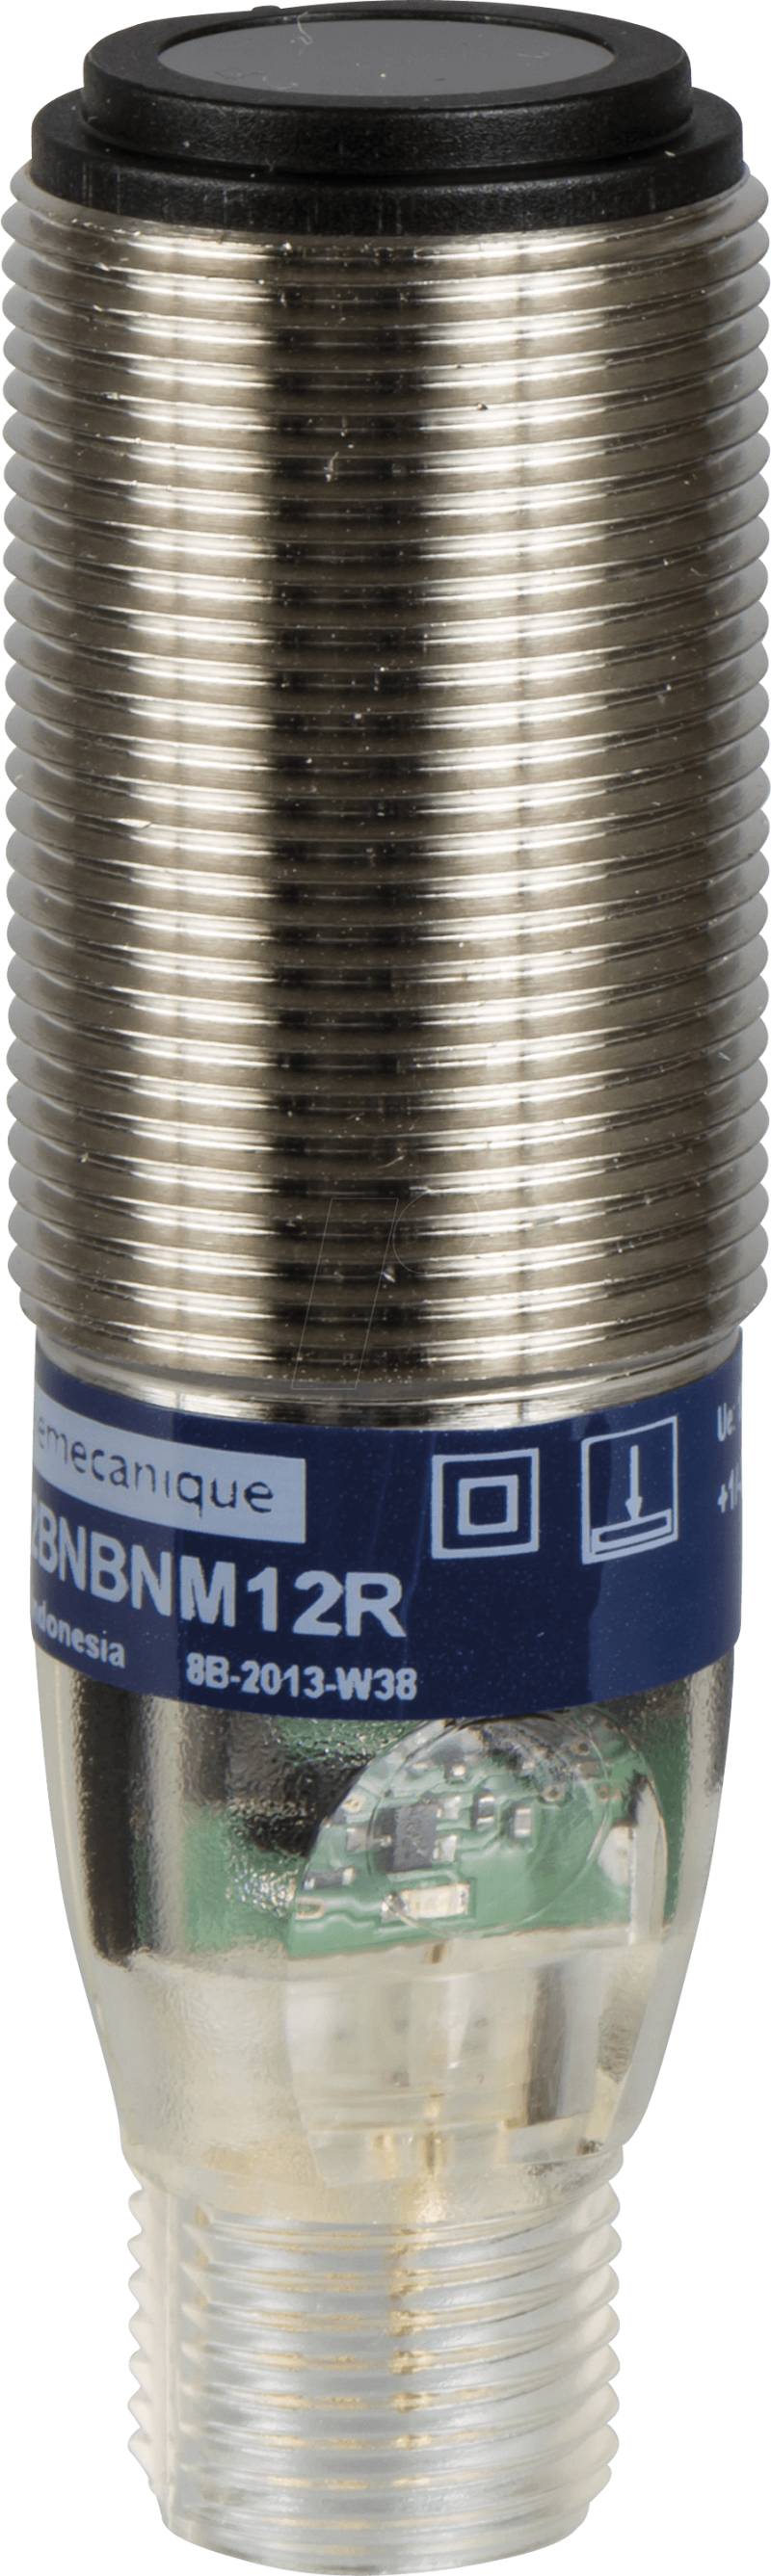 XUB9BPANM12 - Lichtschranke PNP, Zylindrisch M18 , Rotlicht Reflex, Sn 2000 mm von TELEMECANIQUE SENSORS